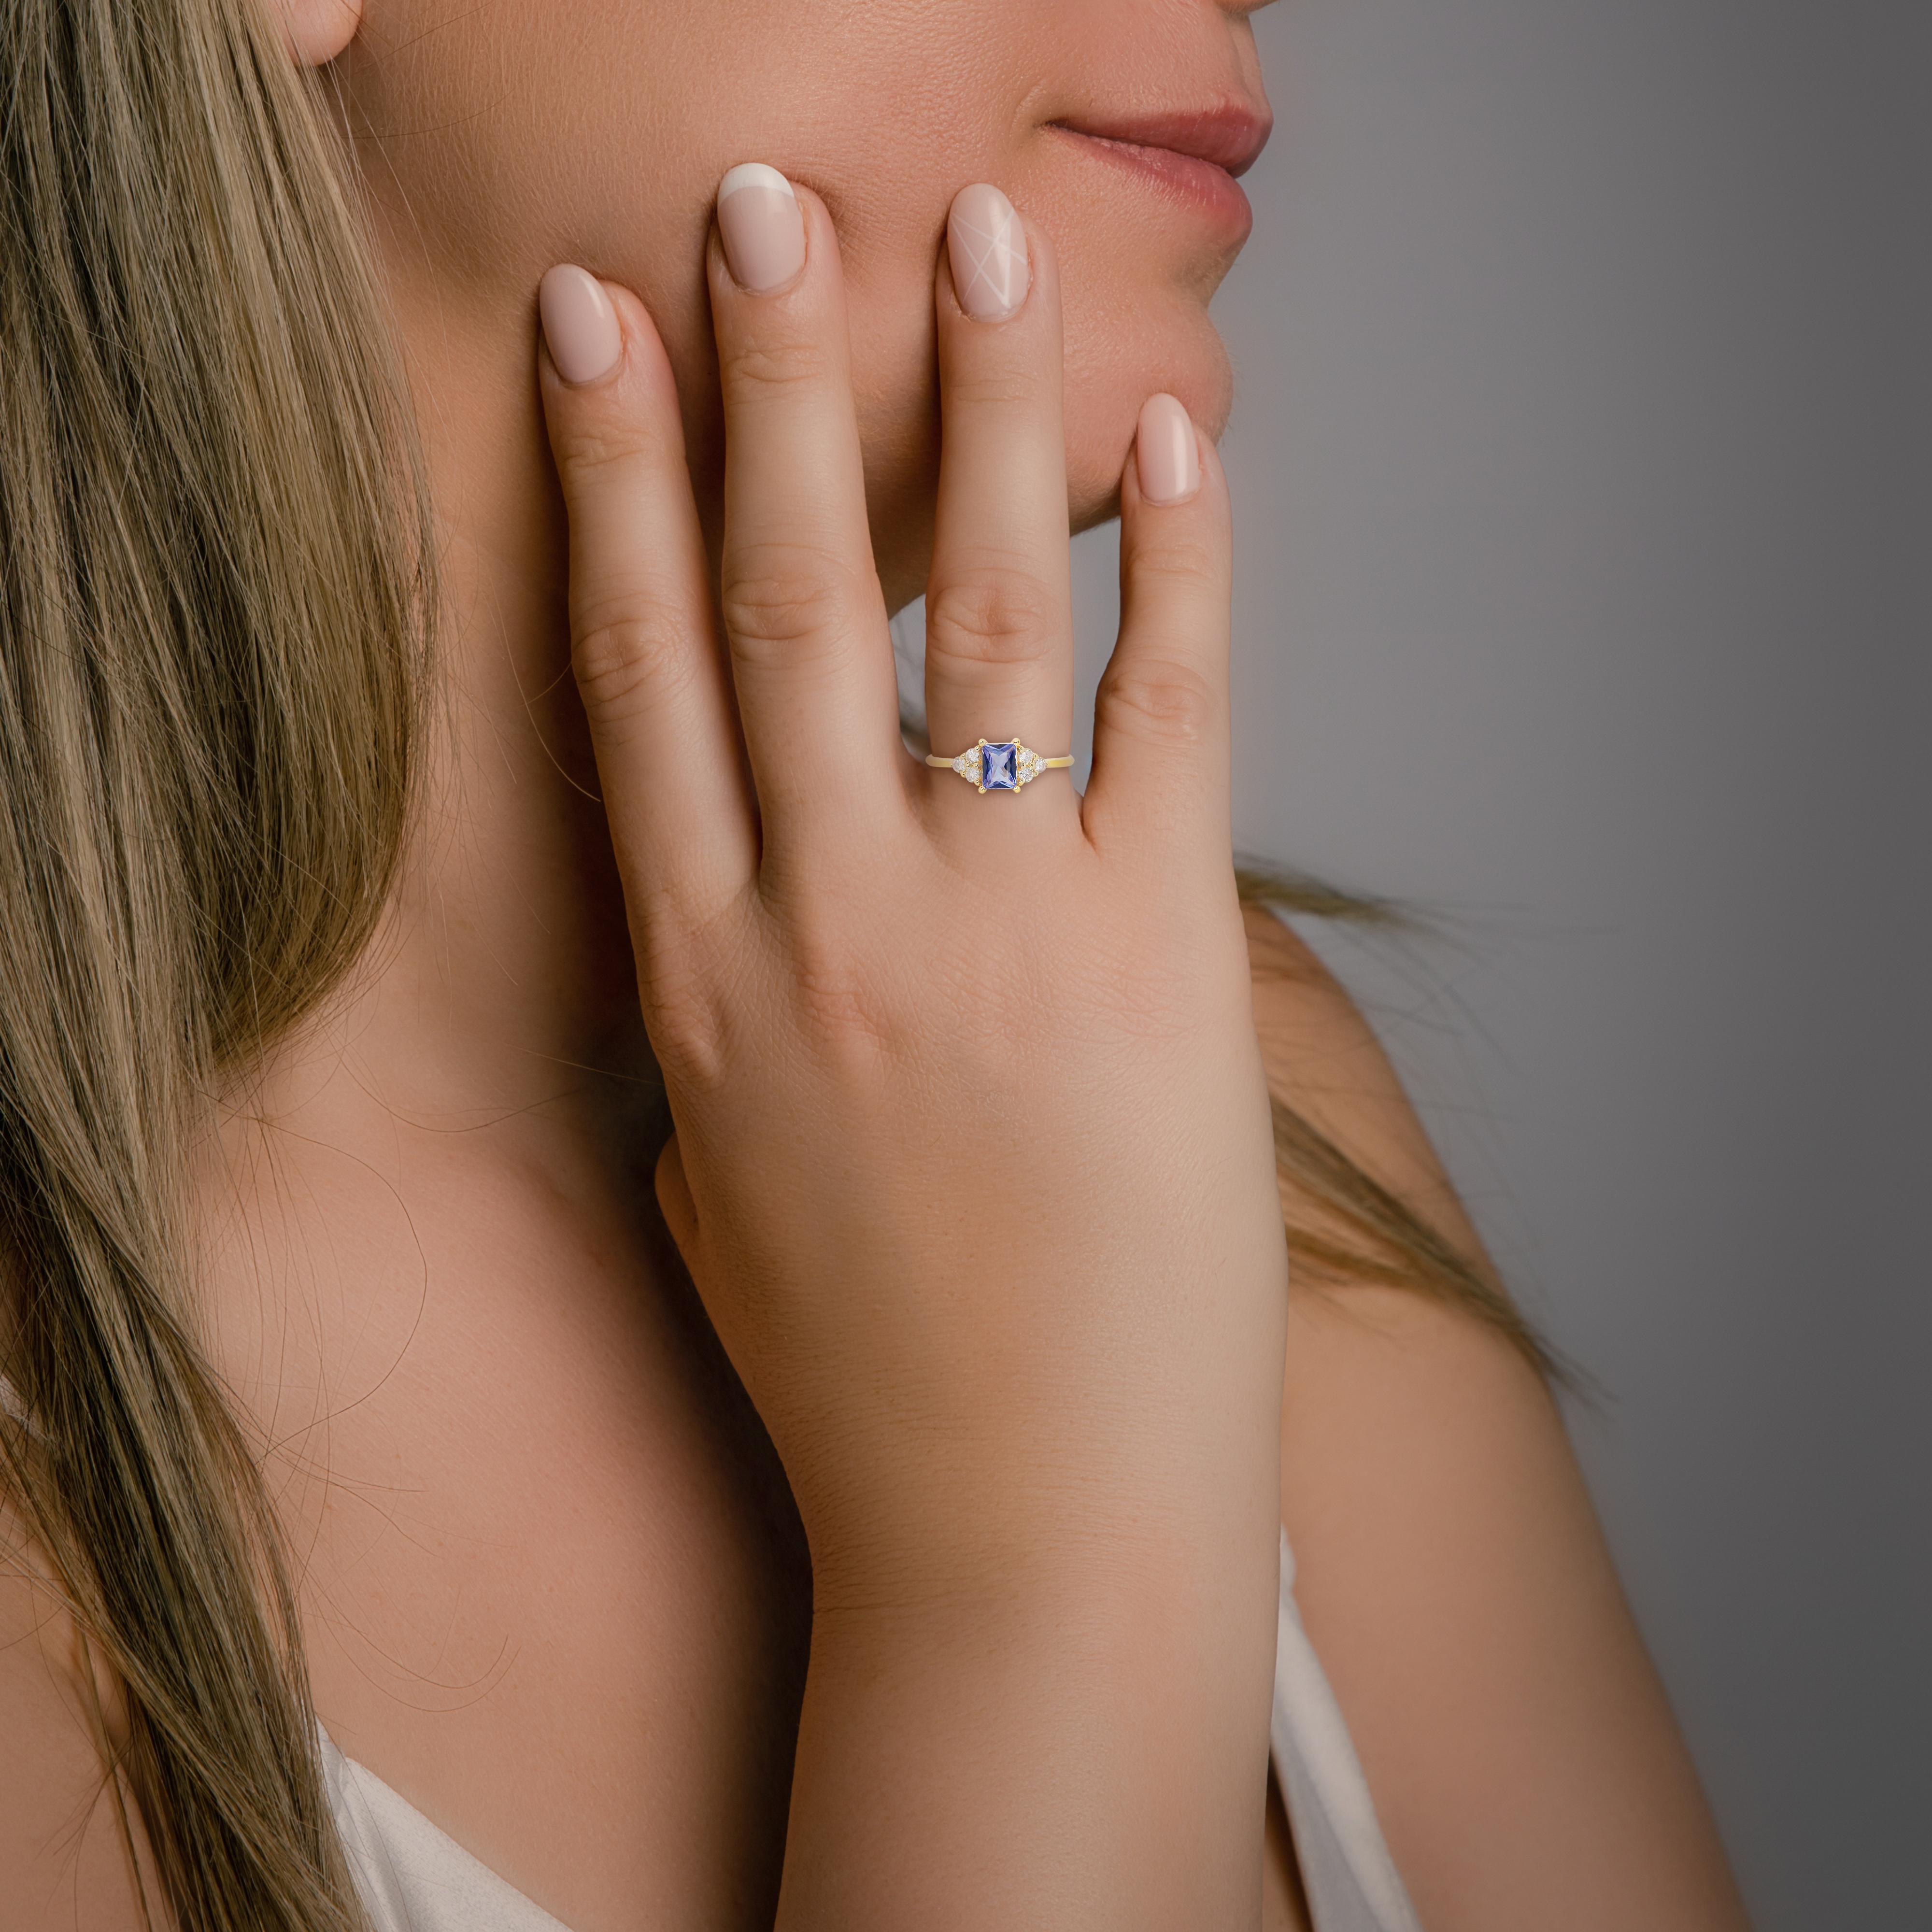 Elegant 18k Gelbgold Tansanit und Diamant Pave Ring w/1,00 ct - IGI zertifiziert

Erhöhen Sie Ihre Schmucksammlung mit diesem 18k Gelbgold Pave Ring, der Eleganz und Raffinesse ausstrahlt. Im Mittelpunkt dieses exquisiten Schmuckstücks steht ein